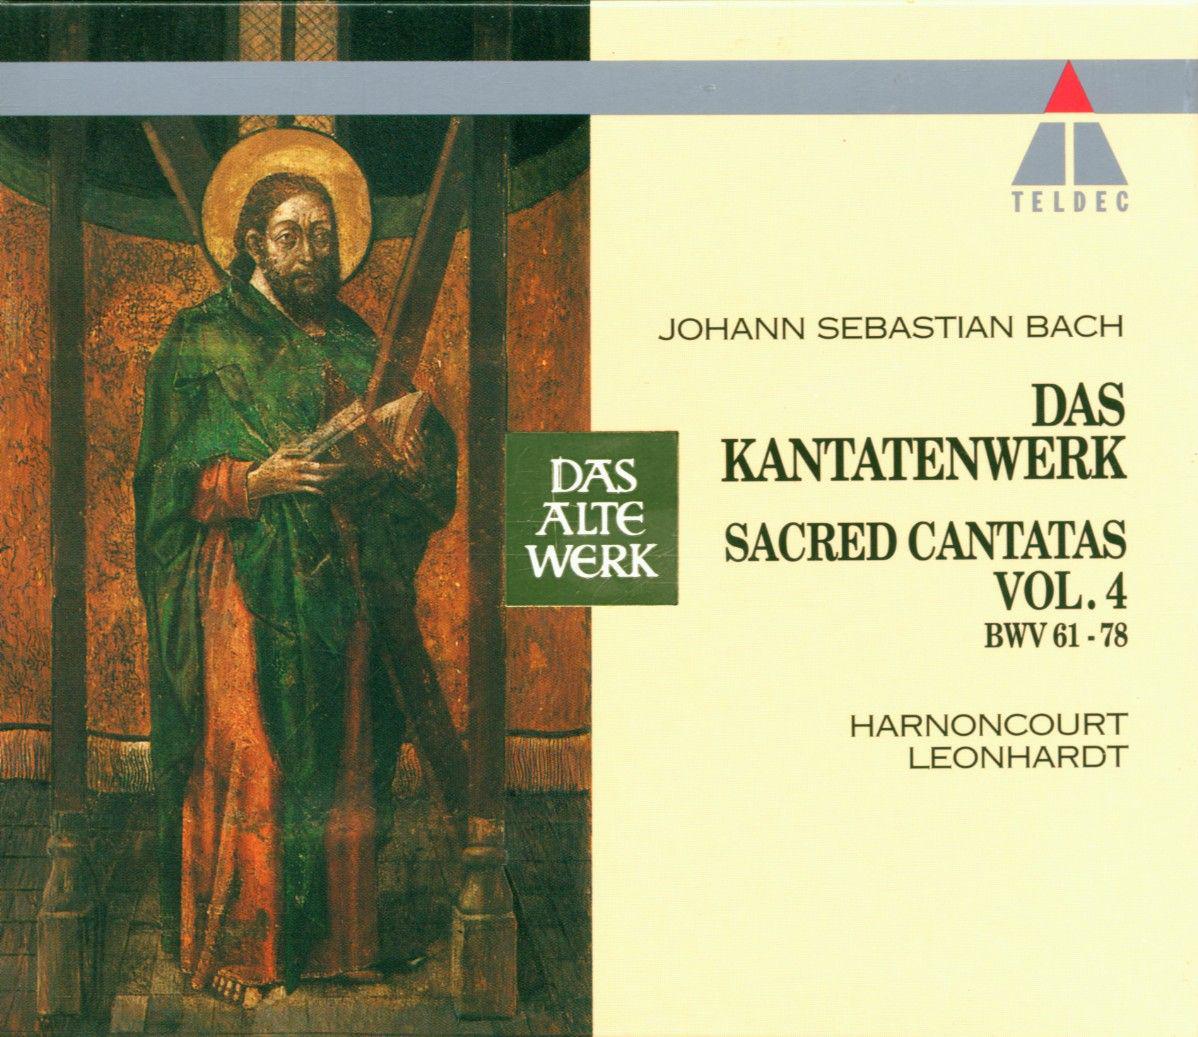 Cantata, Die Elenden sollen essen, BWV 75:"Jesus macht mich geistlich reich"